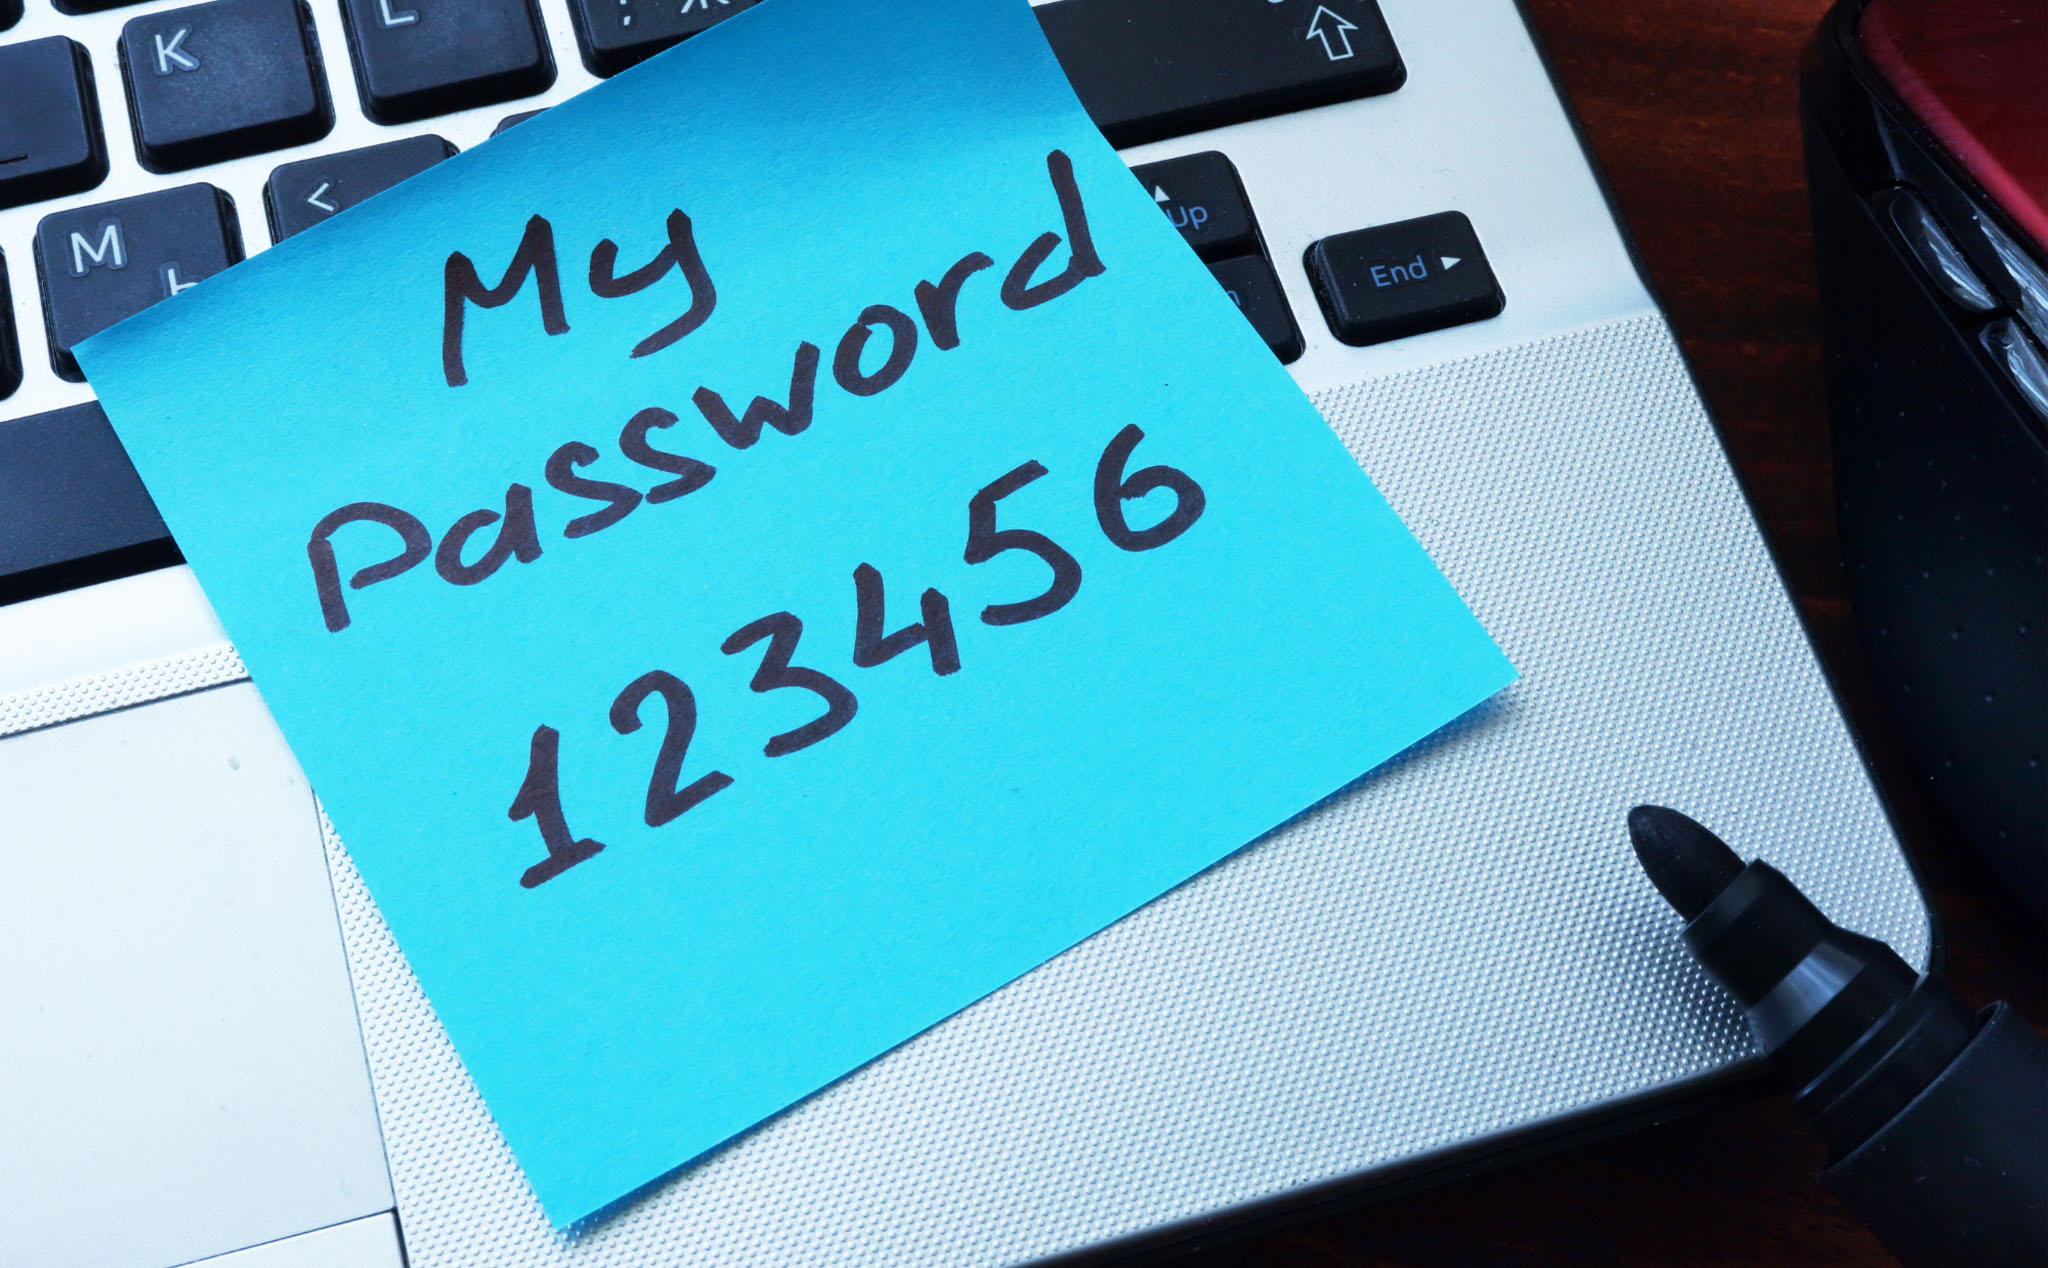 32 cụm password dễ bị đoán nhất, anh em nếu đang dùng xin hãy đổi ngay |  Tinh tế